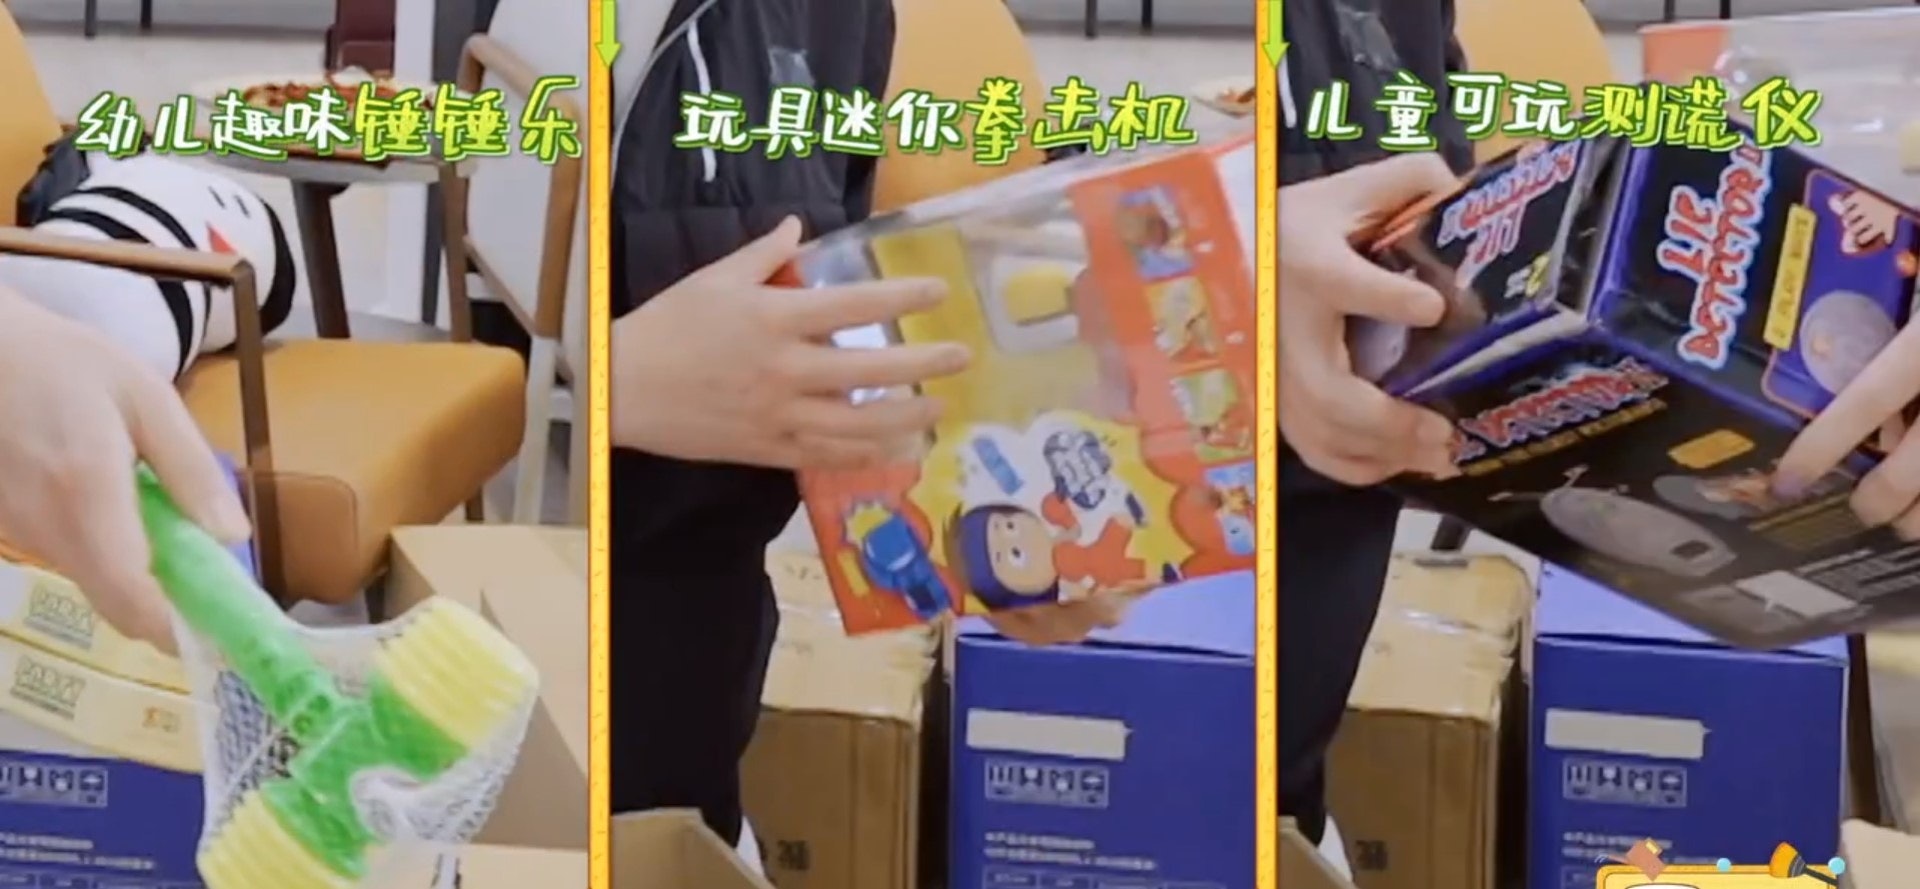 杨千嬅一开箱就发现丁子高的派对玩具，甚至出现疑似儿童学习机等植入式广告。